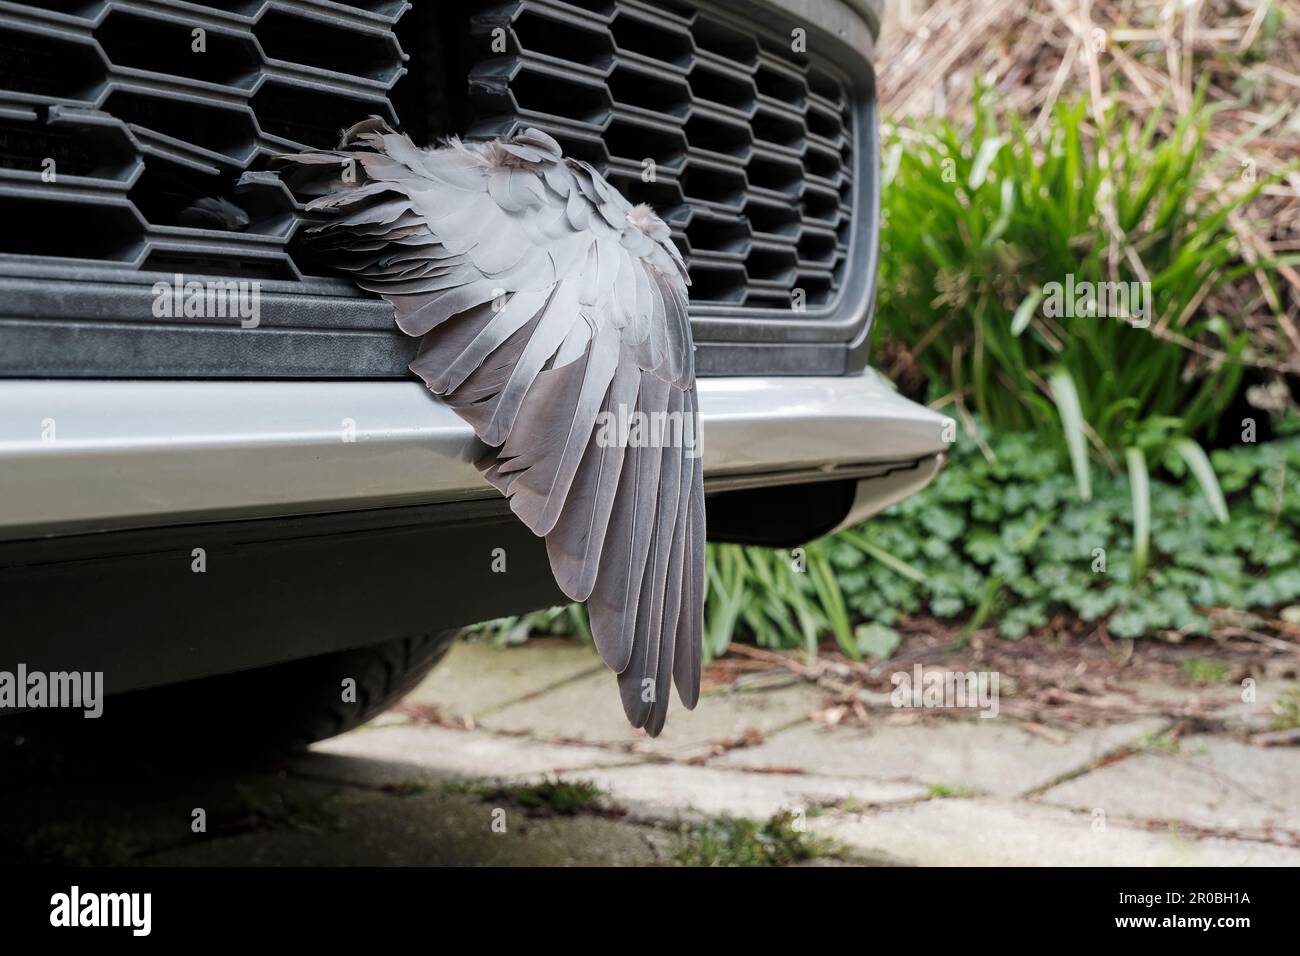 Flügel einer toten Taube im Kühlergrill eines Autos. Der Vogel wurde vom  Auto getroffen und brach daraufhin das Kunststoffgitter Stockfotografie -  Alamy